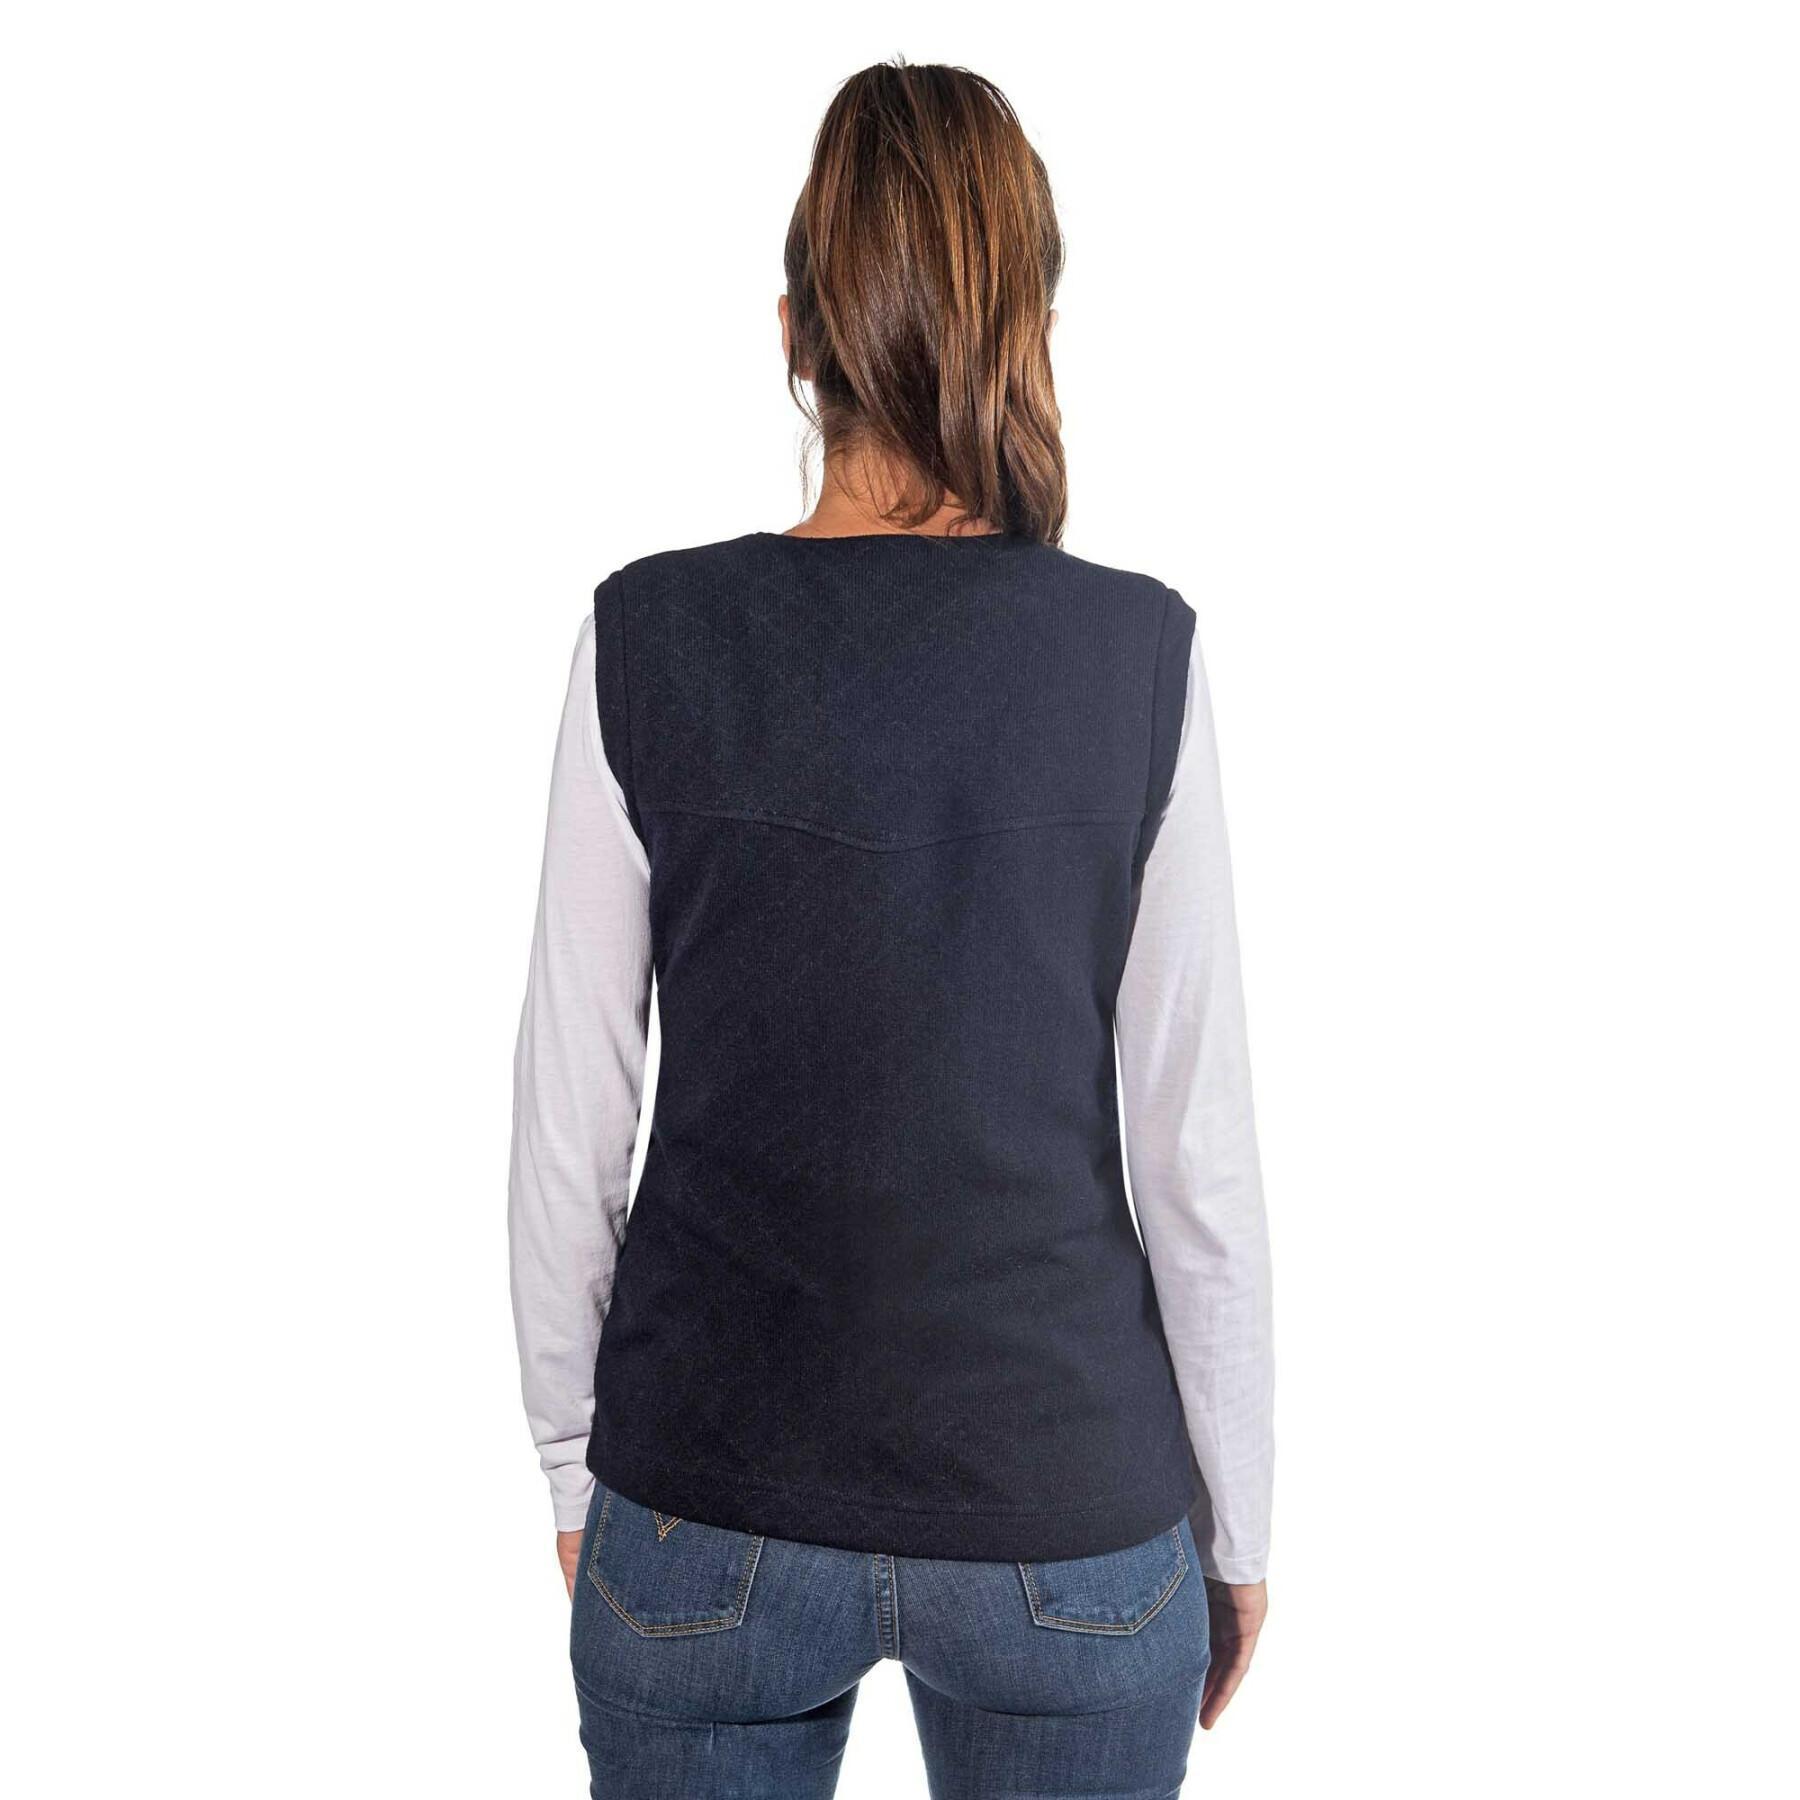 Sleeveless vest for women Skidress Aurore